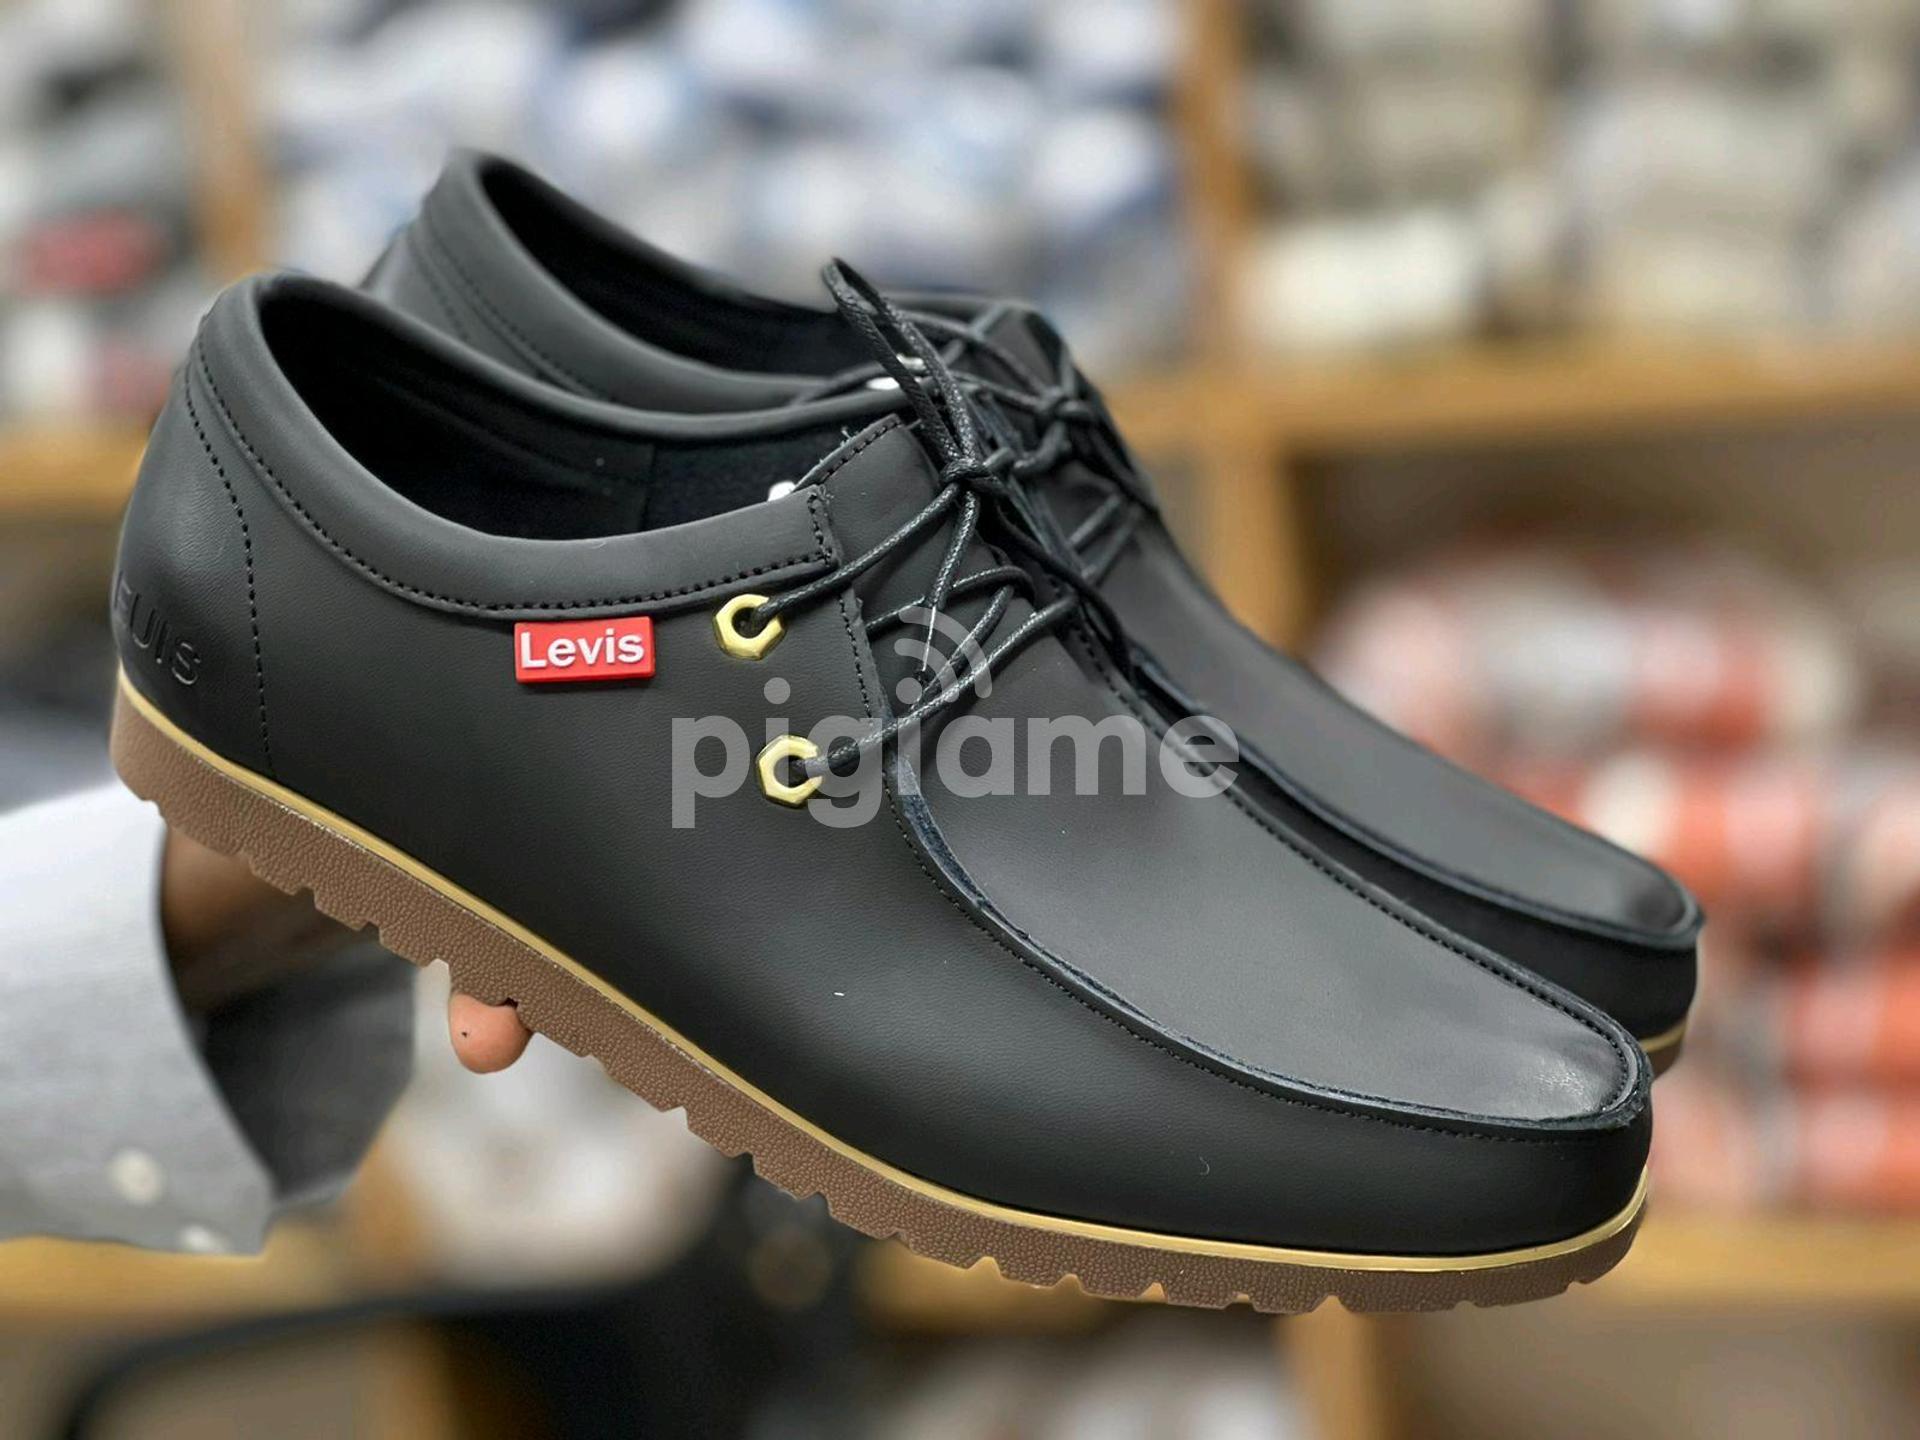 Authentic Levis Clark Shoes in Nairobi CBD | PigiaMe